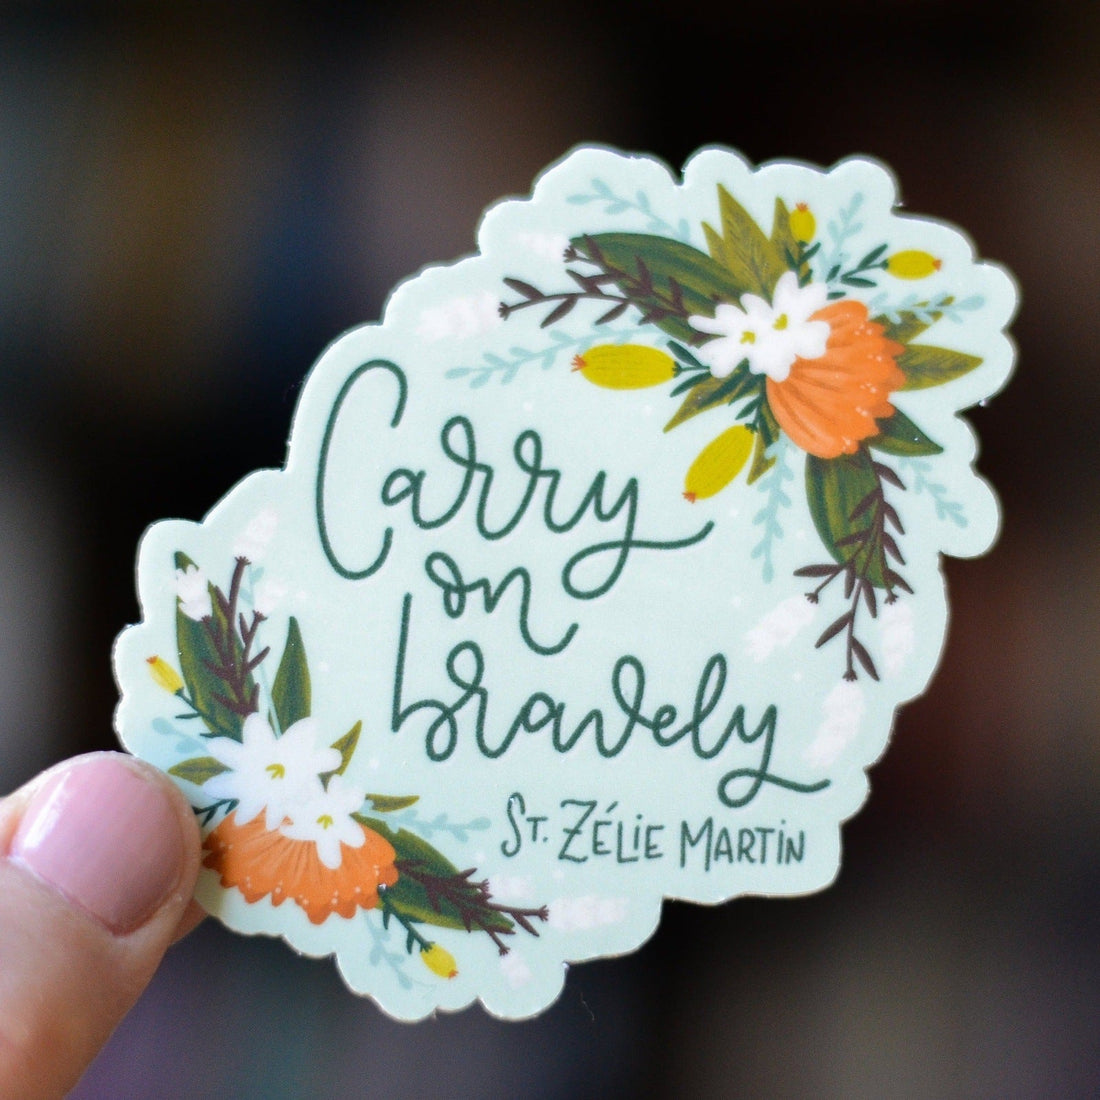 St. Zélie Martin Sticker - Little Way Design Co.